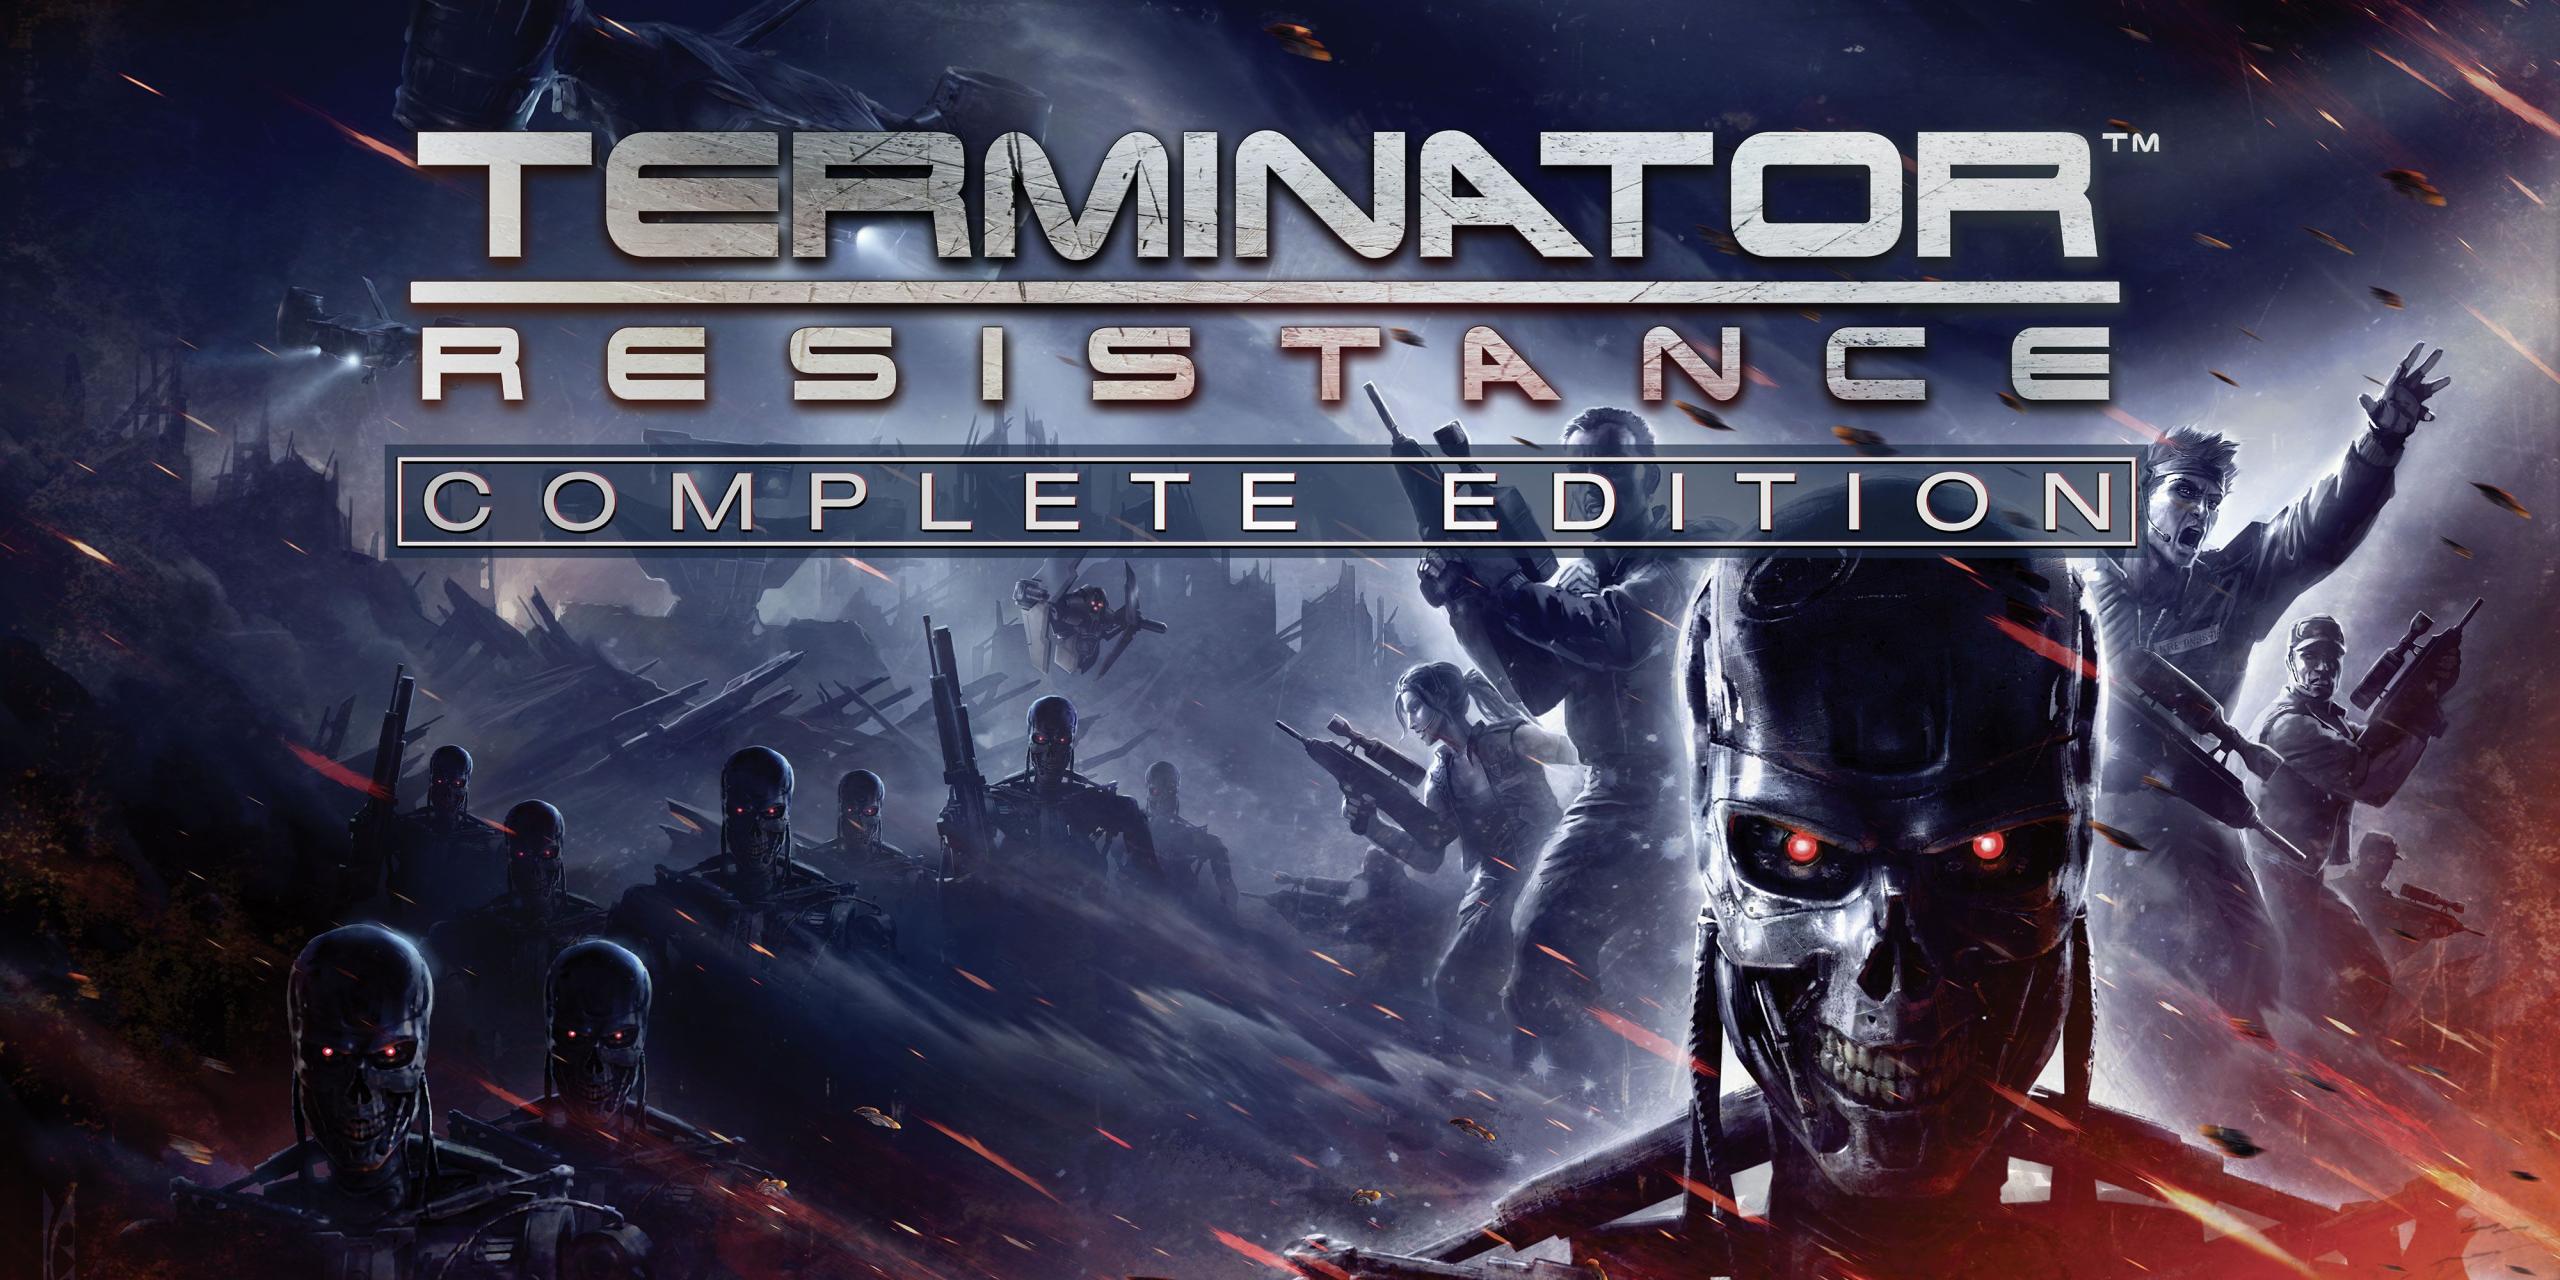 “Una repetición de un FPS promedio” – Terminator: Resistance – Revisión de la edición completa